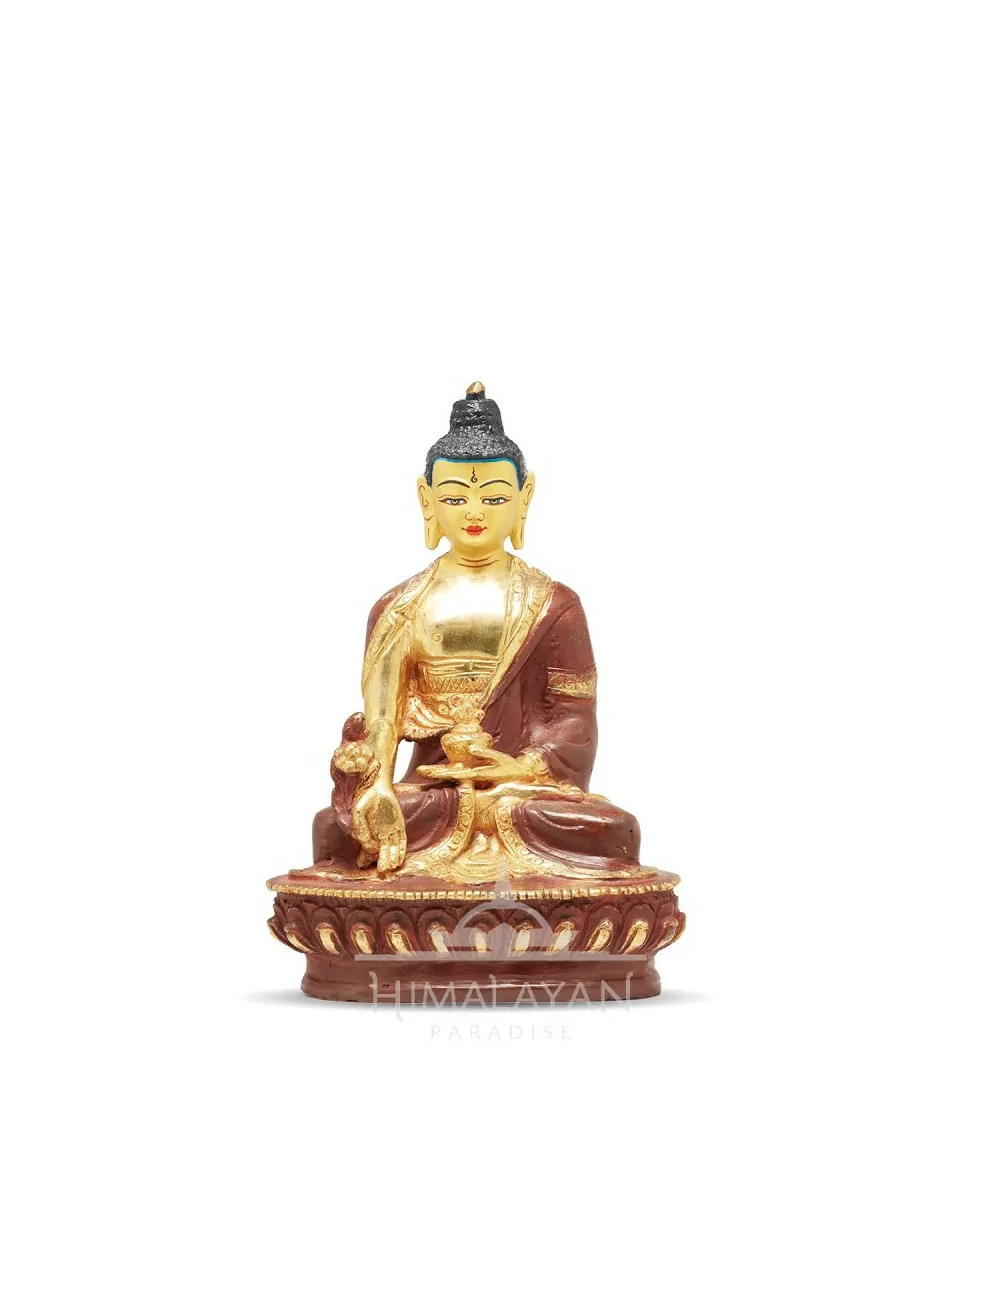 Estàtua Bronze Buda Medicina |Himalayan Paradise